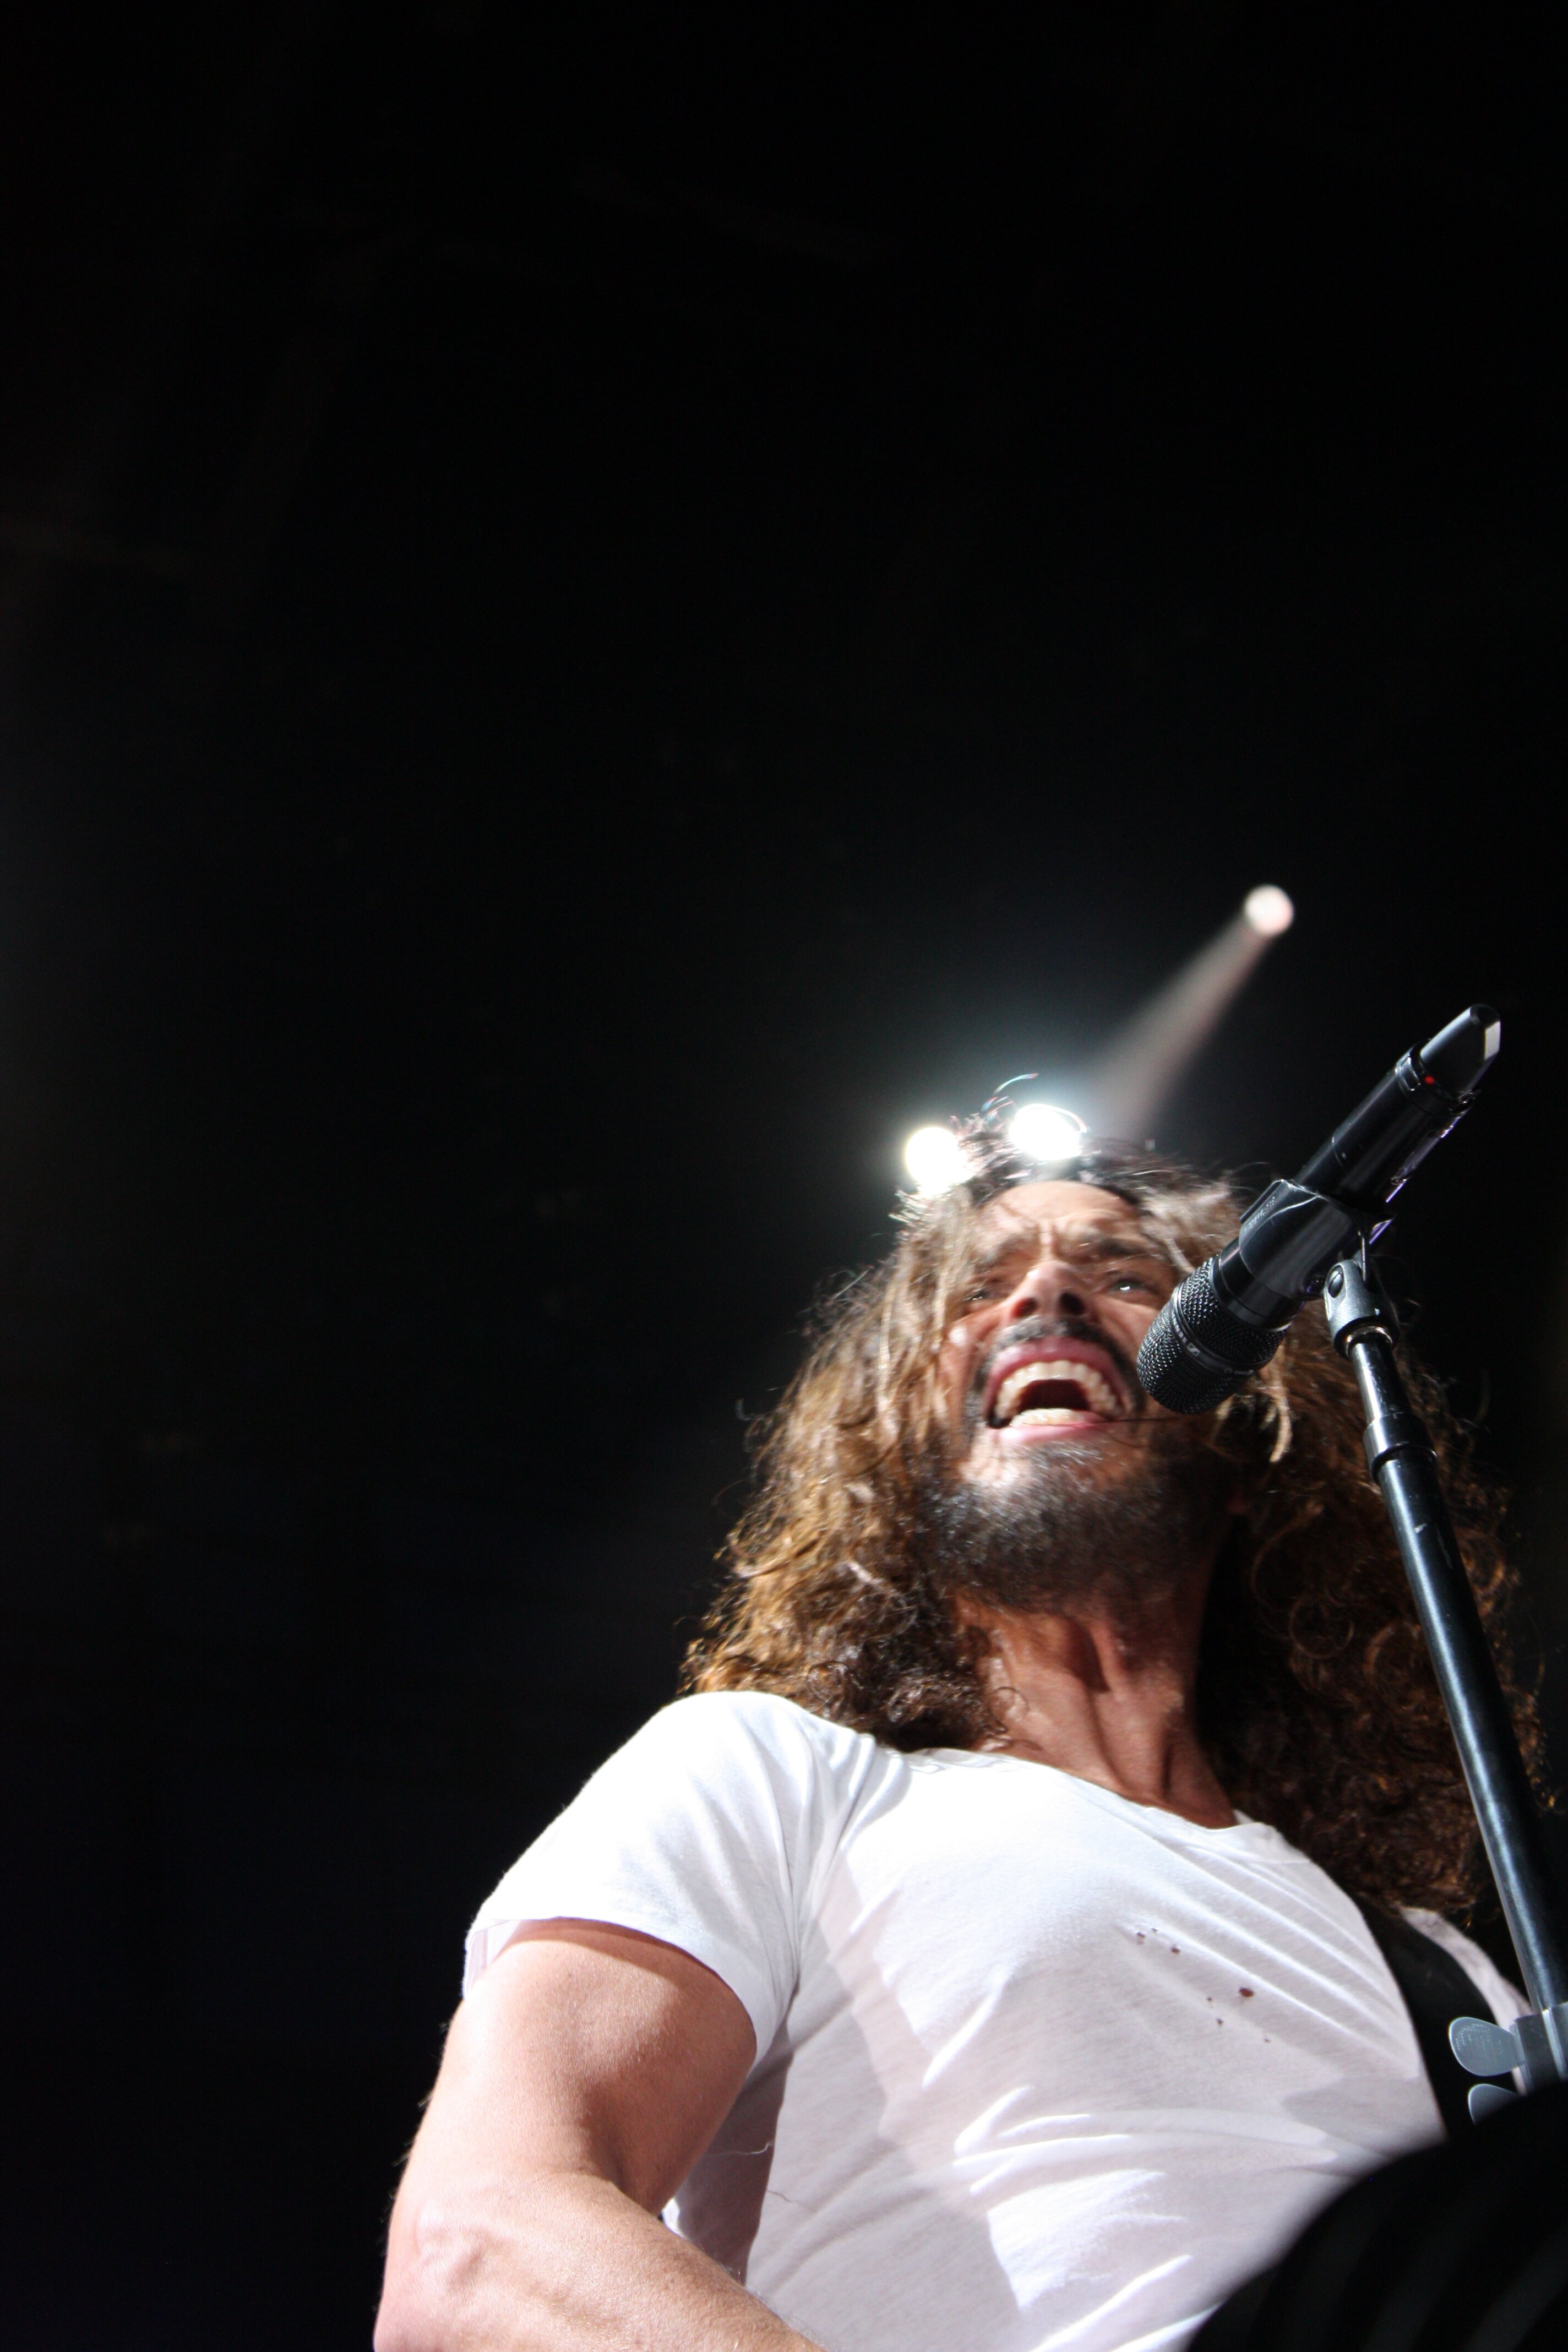 Soundgarden's Chris Cornell